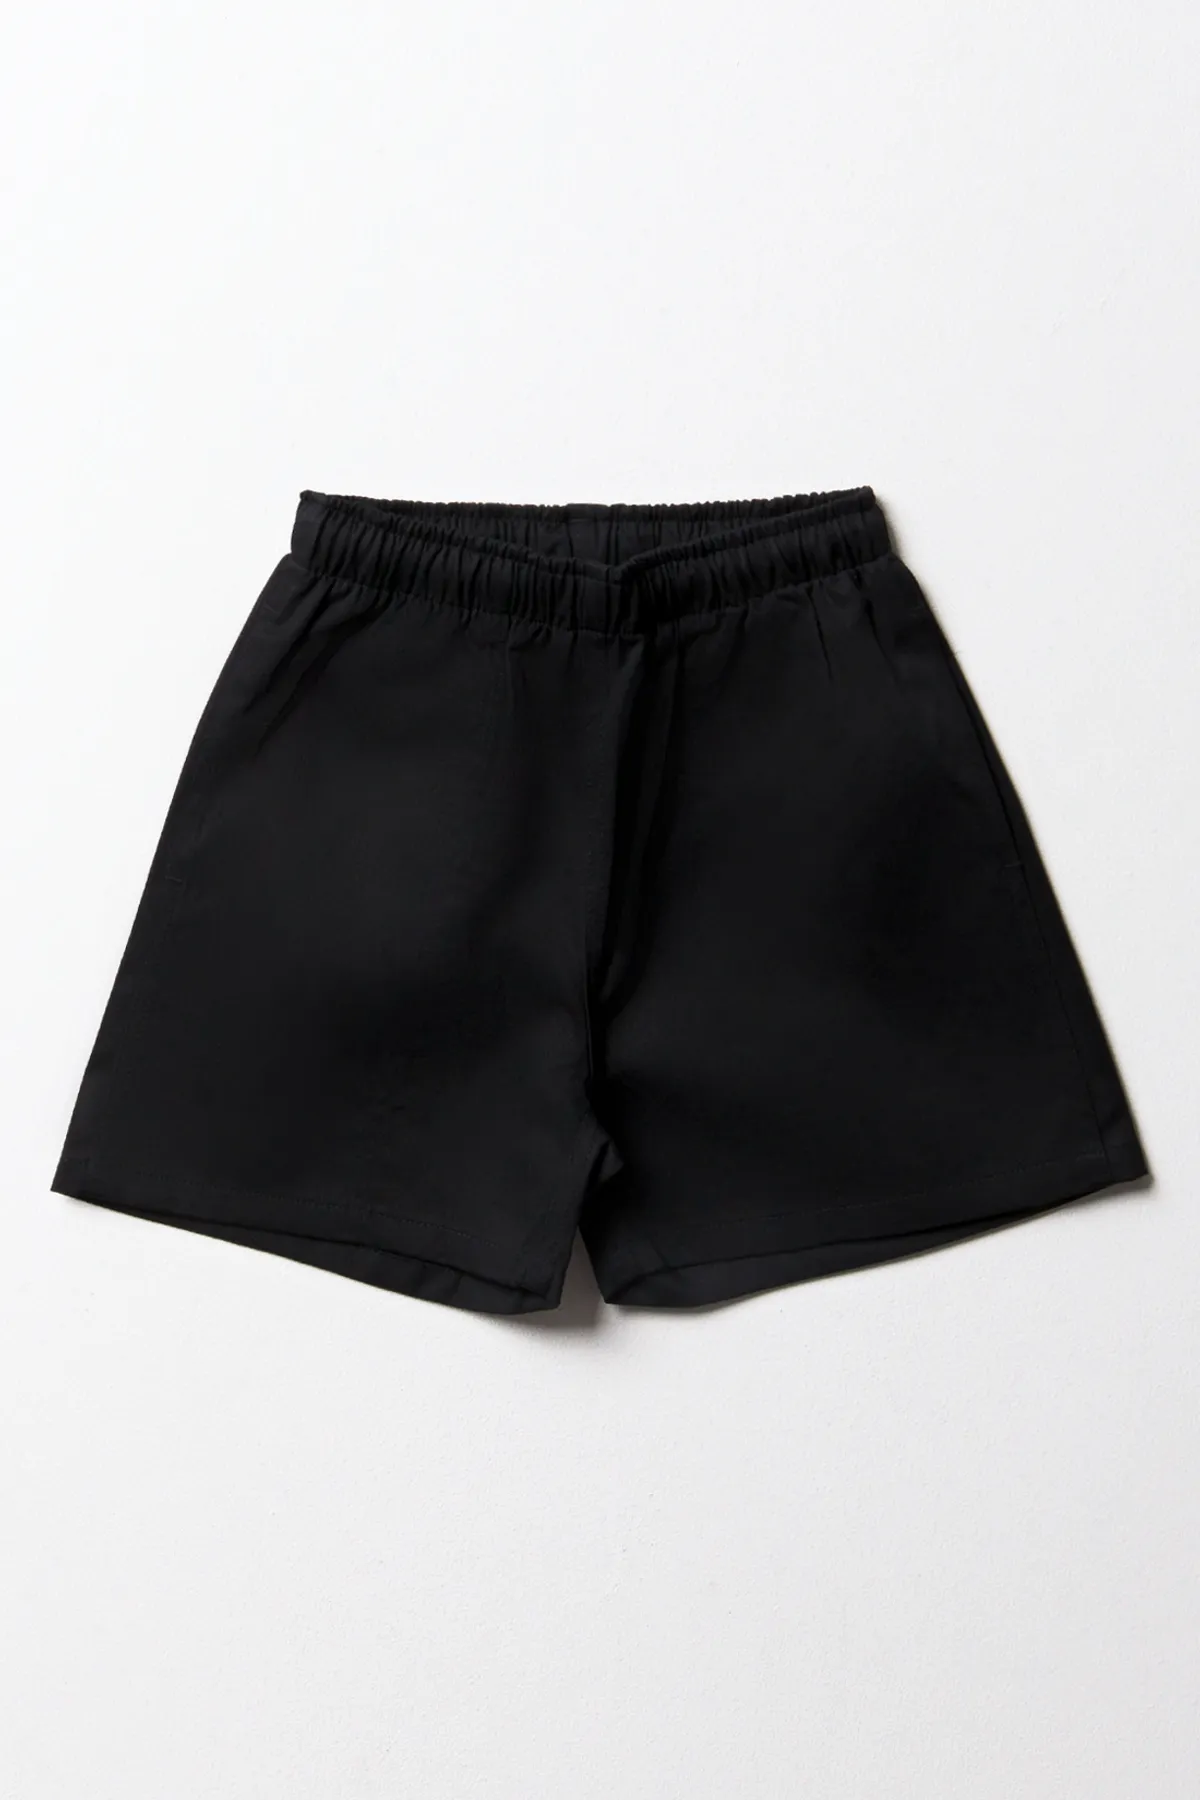 Unisex sports shorts black - Kids's School Sportswear